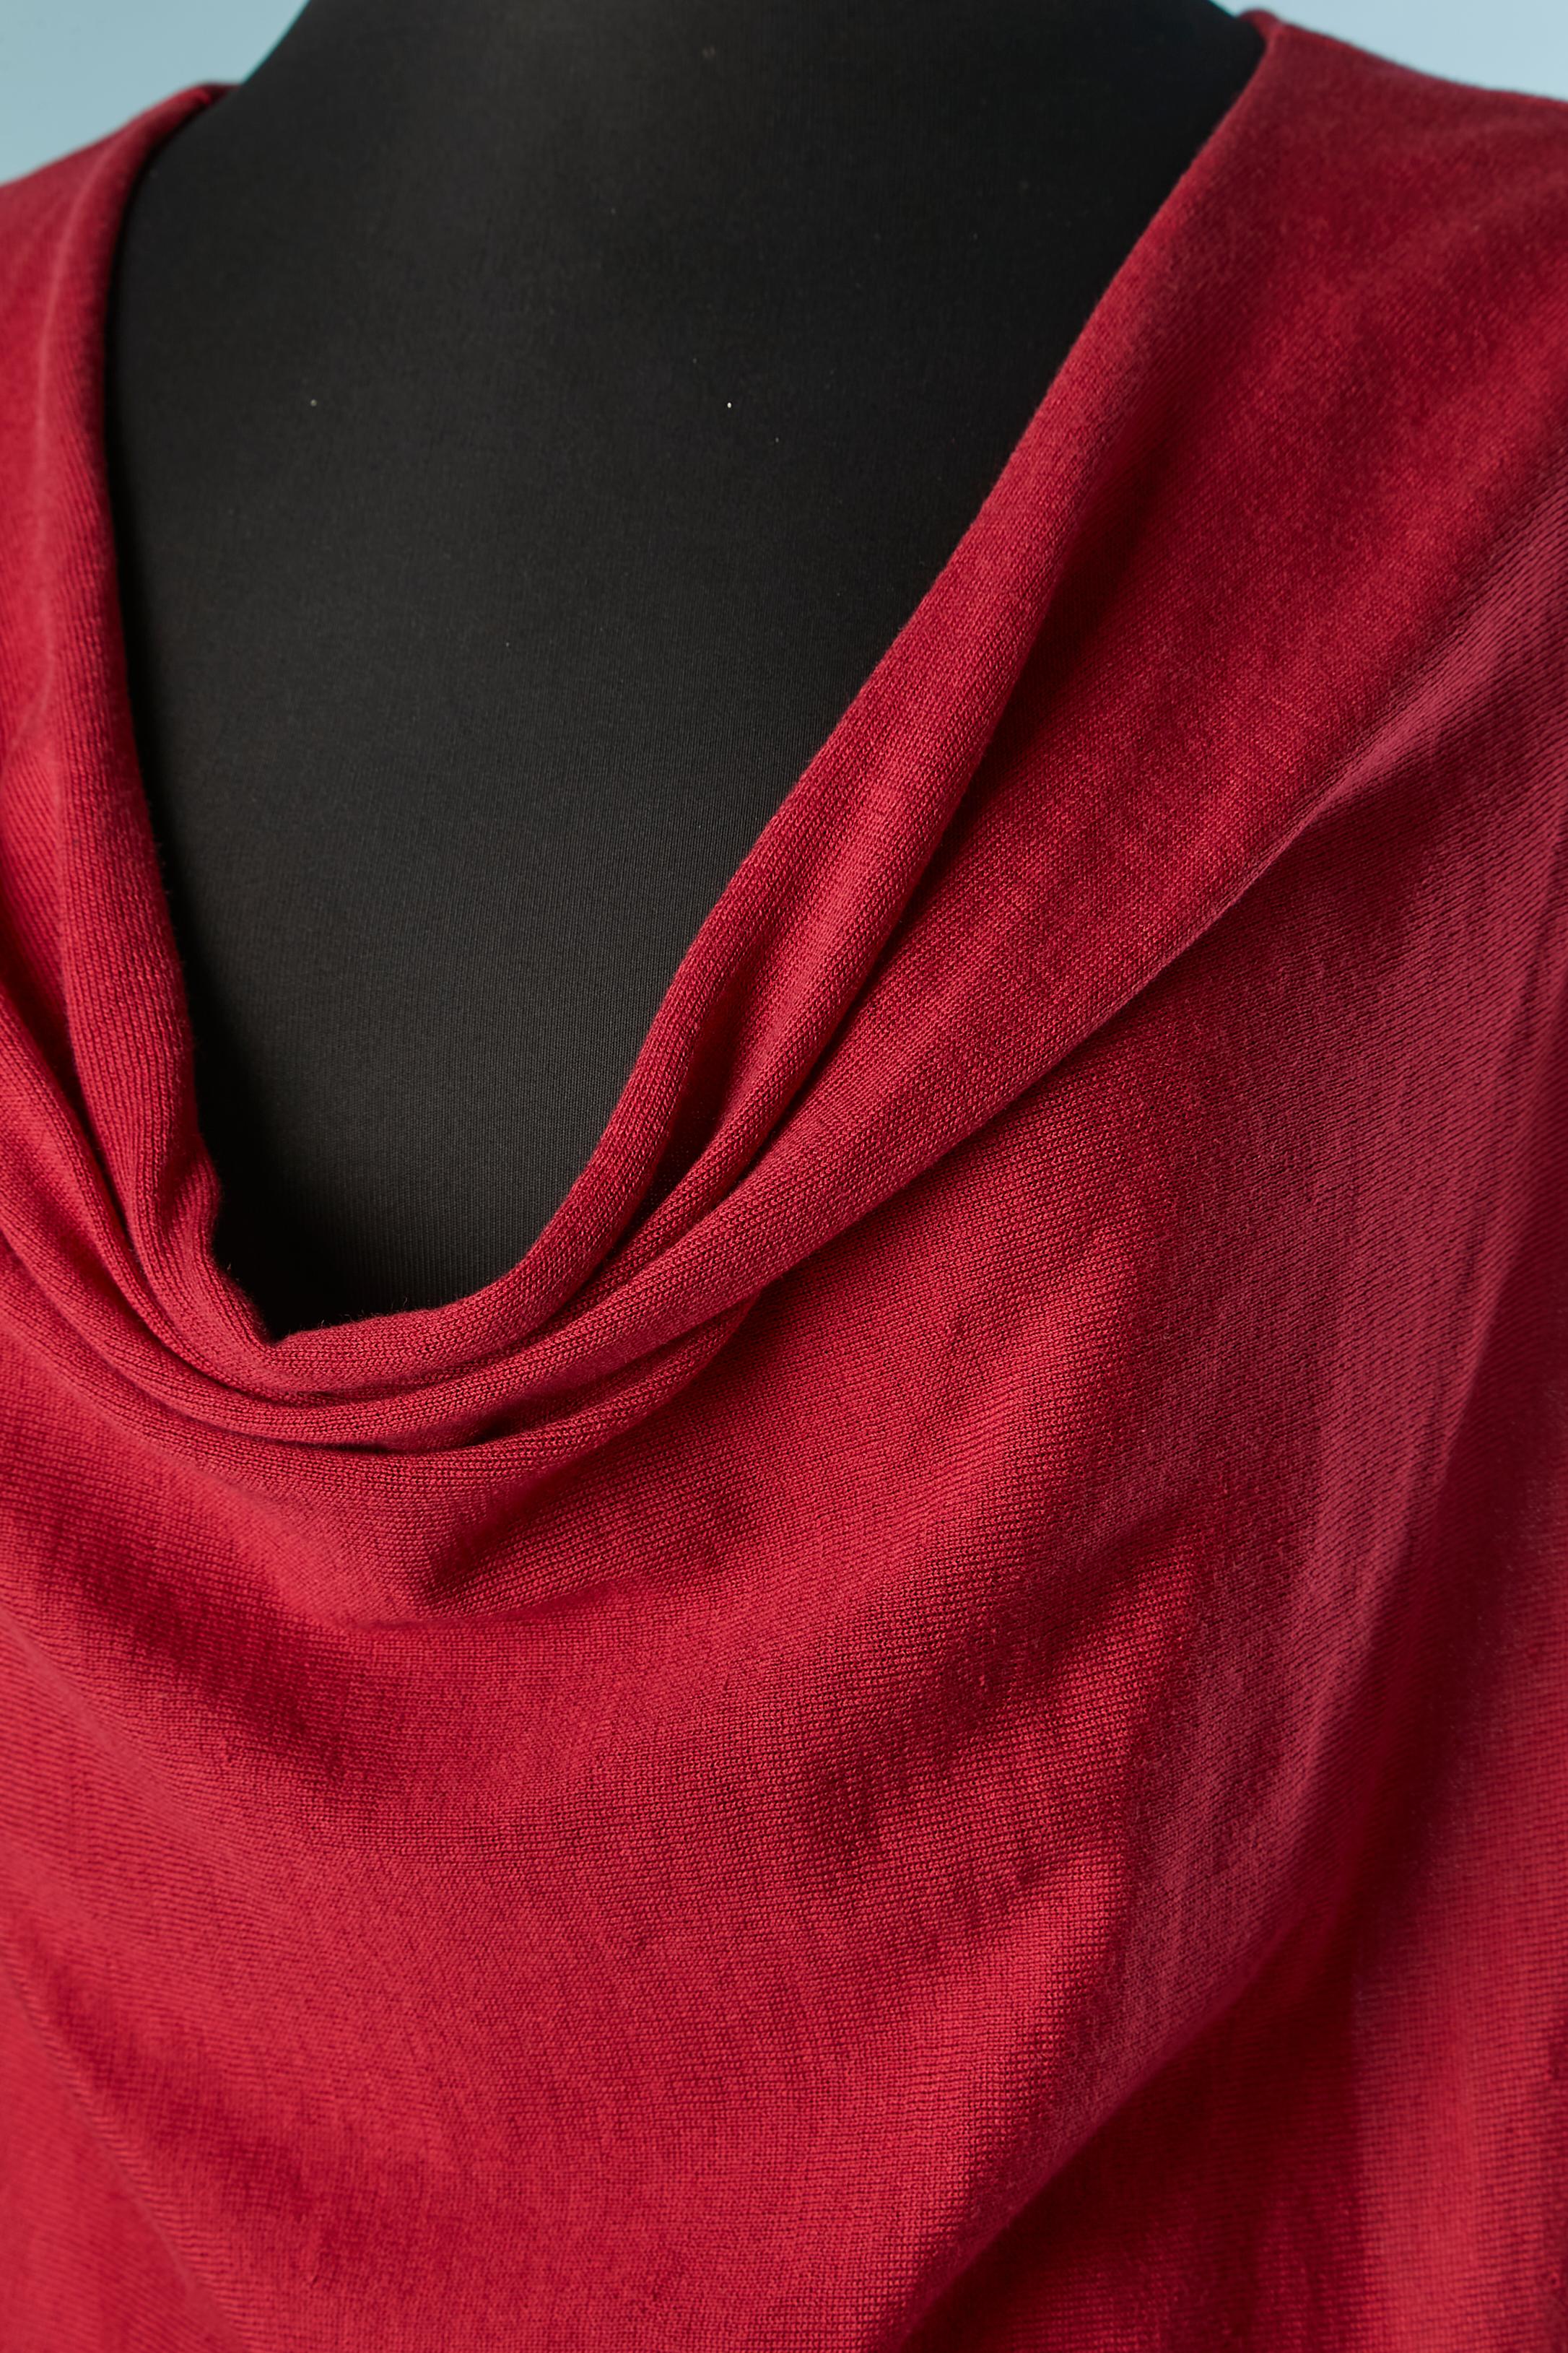 Roter ärmelloser Pullover aus Seide und Baumwolle. Zusammensetzung des Gestricks: 50% Baumwolle, 50% Seide.
Auf der Büste drapiert. 
GRÖSSE L 